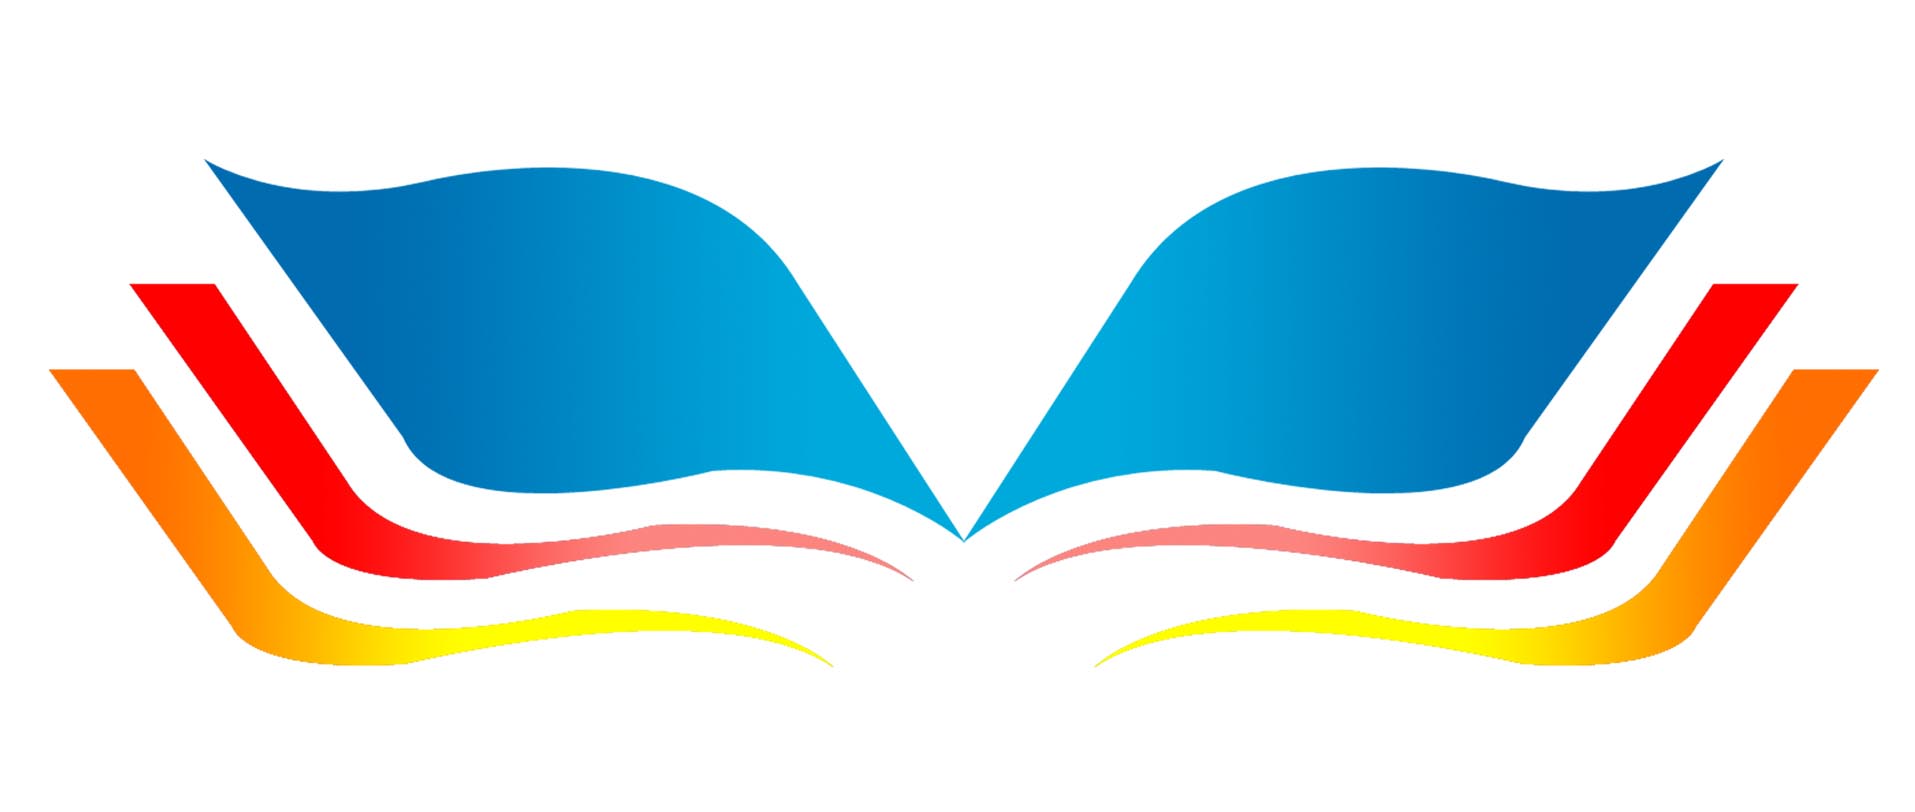 语文网站logo设计标志设计任务